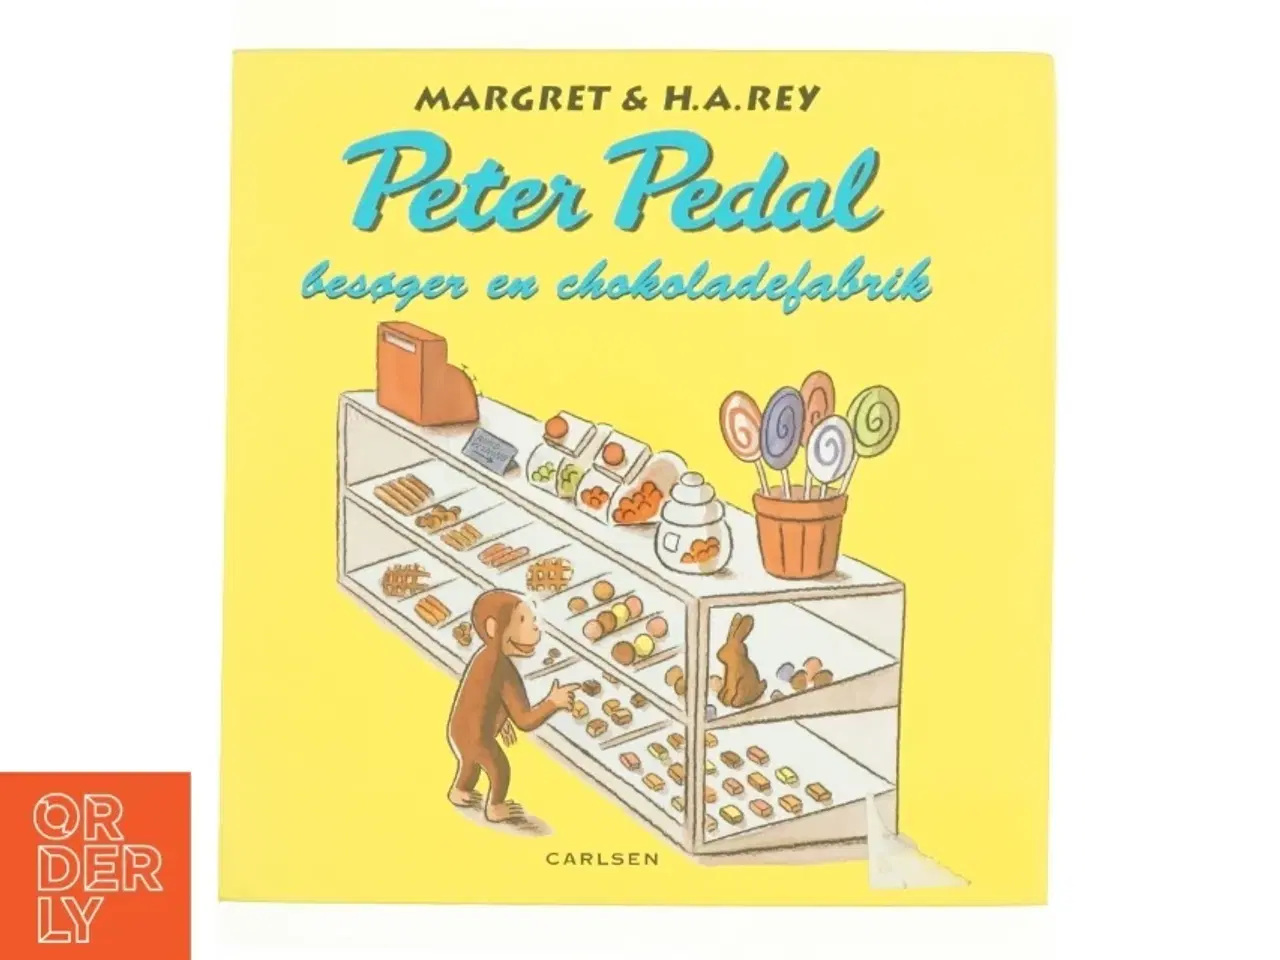 Billede 1 - Peter Pedal besøger en chokolade fabrik af Margret & H. A. Rey (Bog)